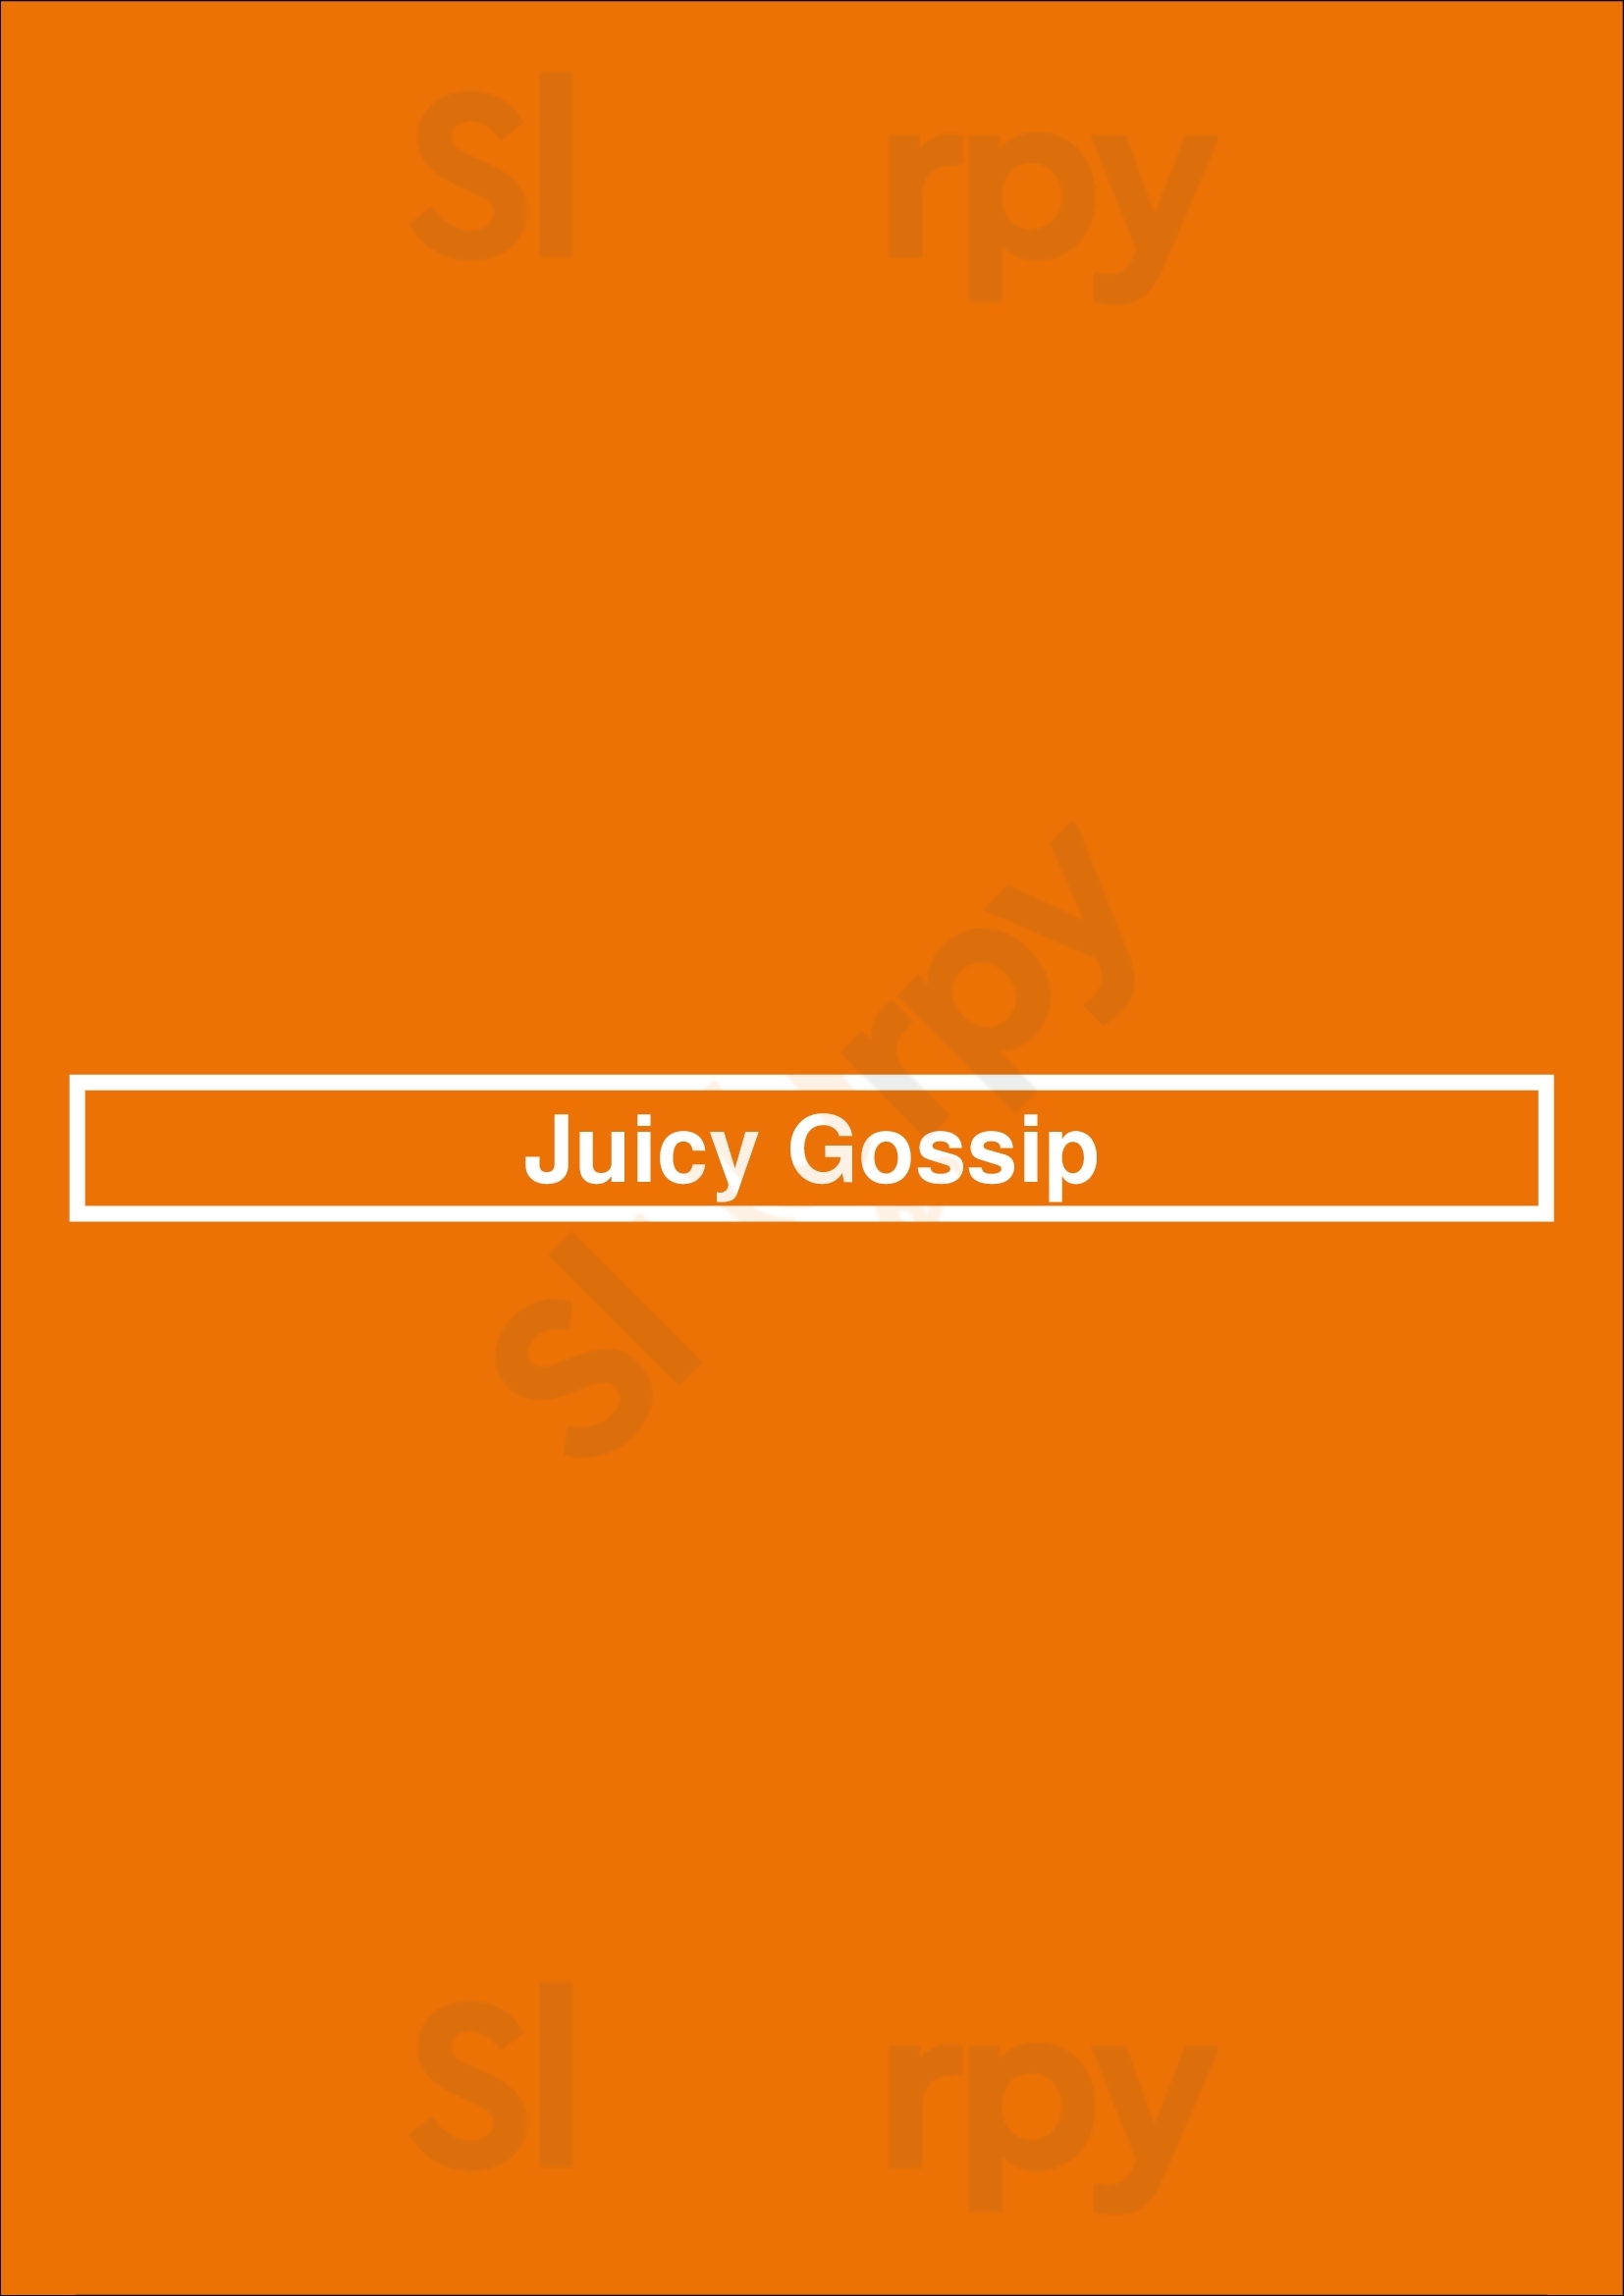 Juicy Gossip Leeds Menu - 1